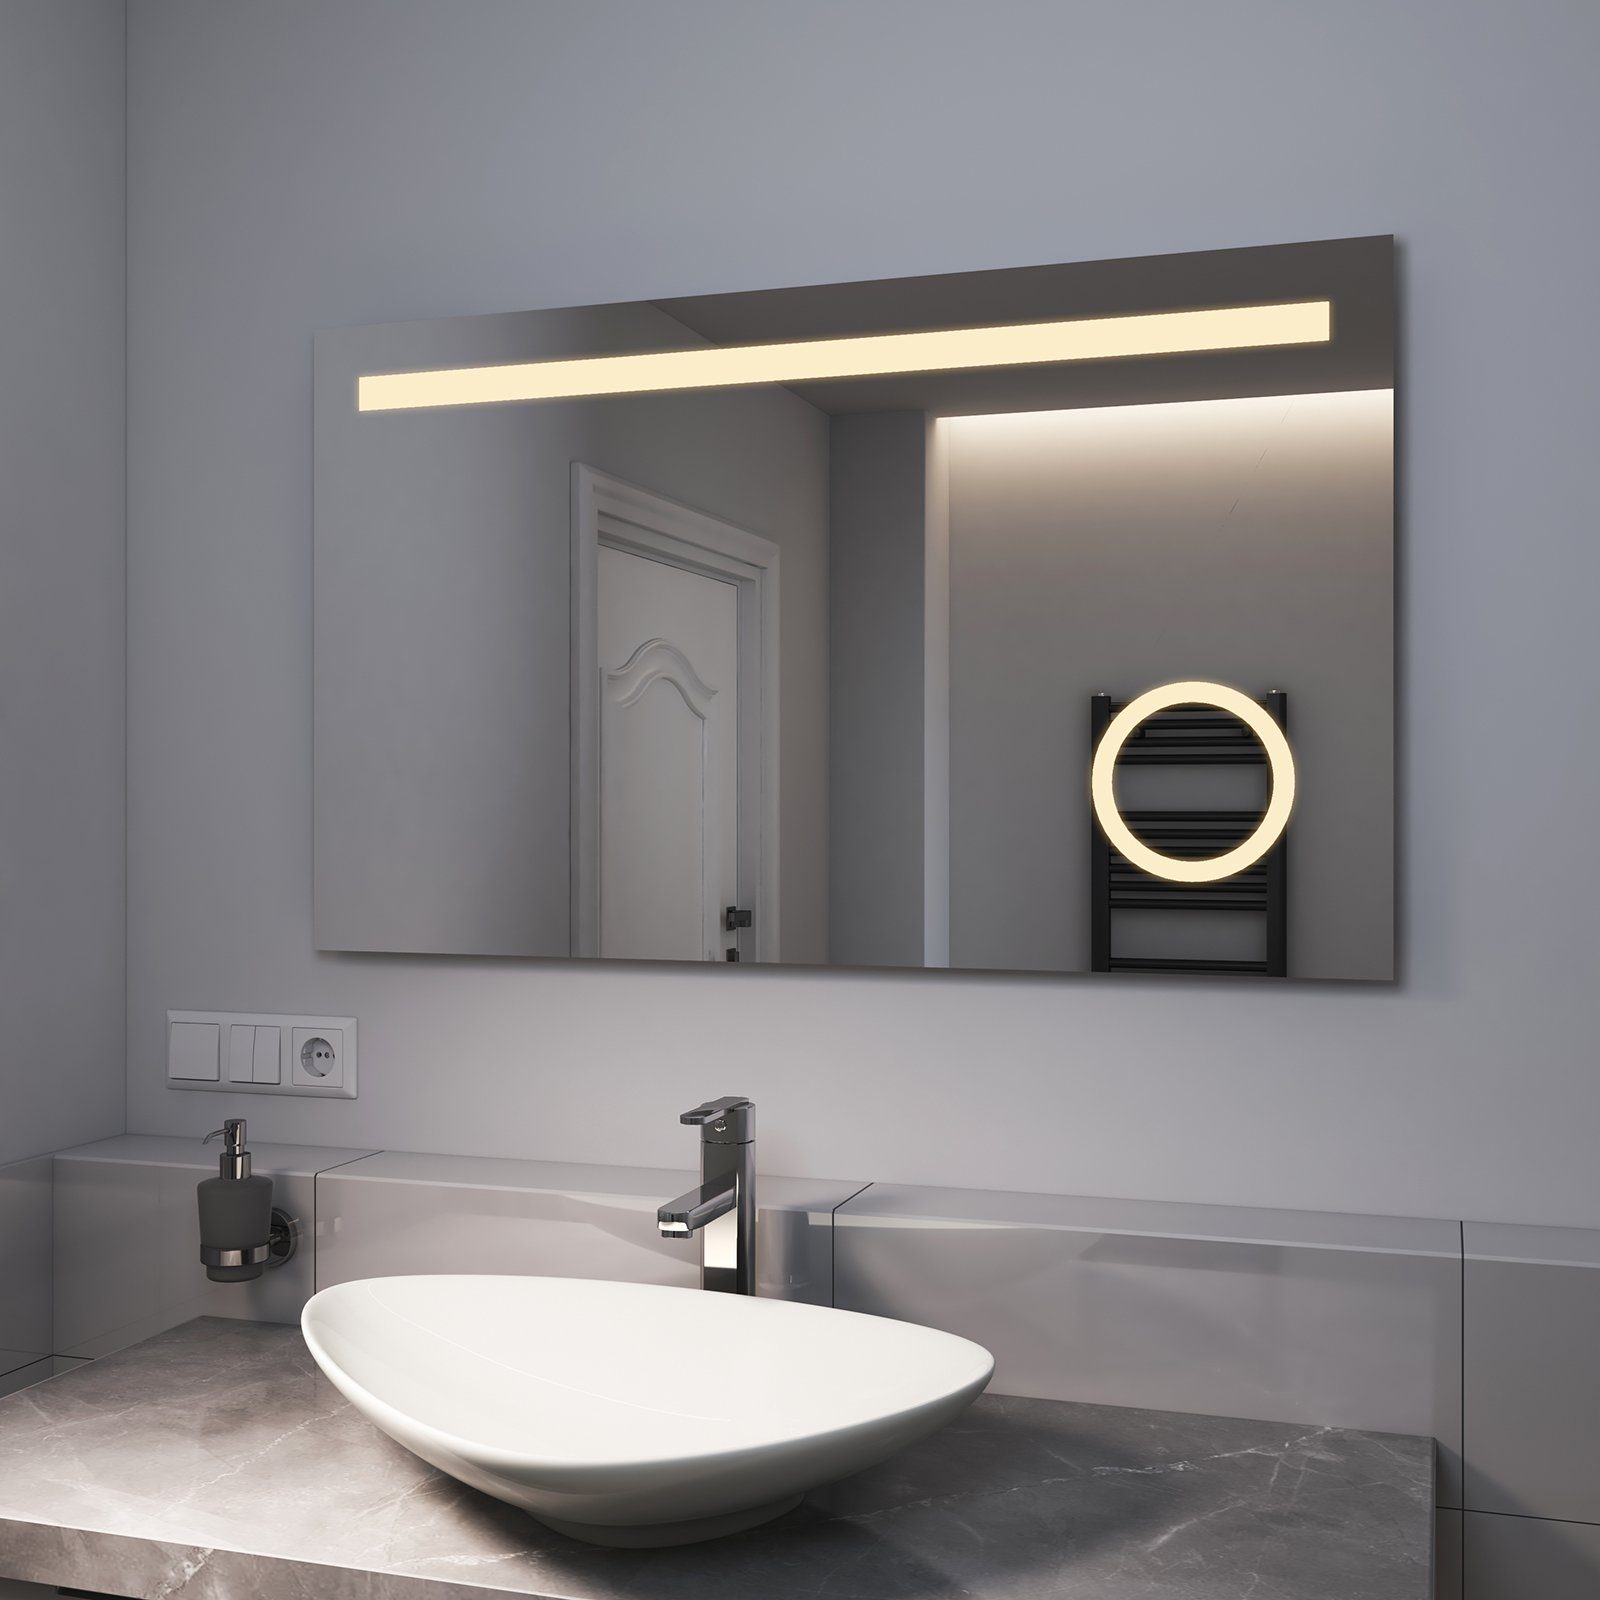 EMKE Badspiegel EMKE LED Badspiegel 2 mit Beschlagfrei, Lichtfarbe Taste mit Beleuchtung, Warmweiß/Kaltweiß Wandspiegel, und LED